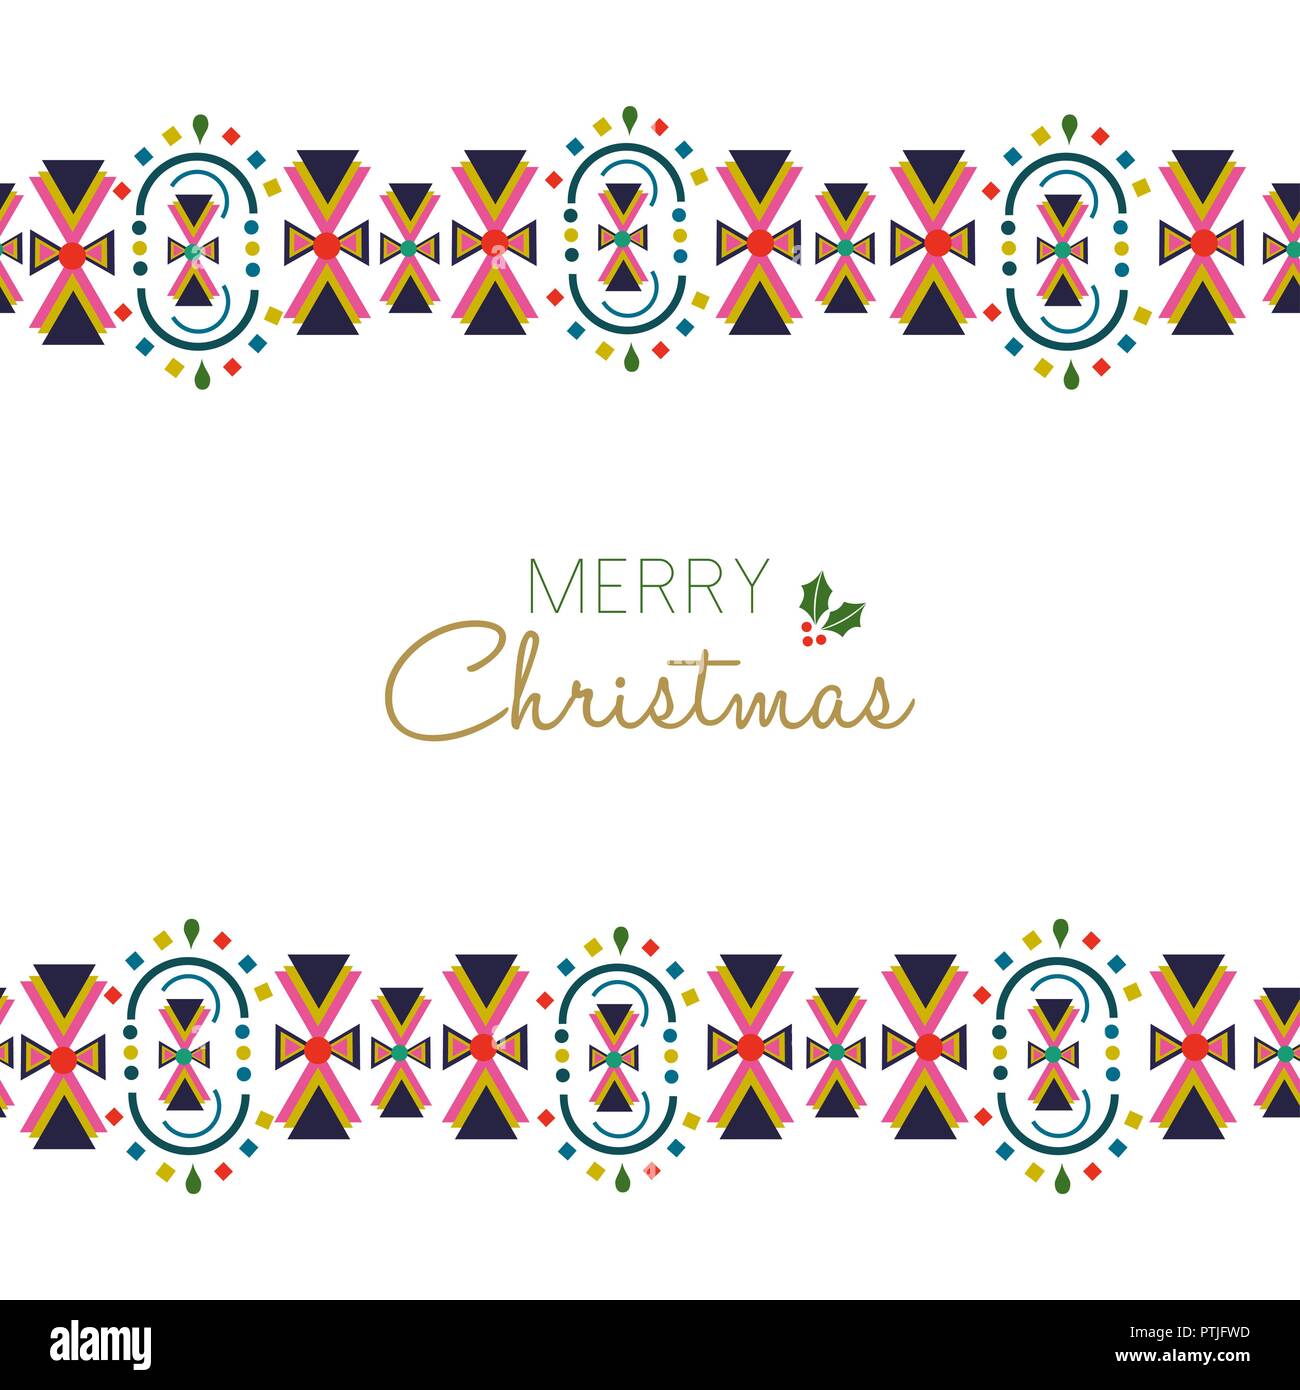 Merry Christmas holiday greeting card illustrazione. Tradizionale stile Scandinavo con decorazione geometrica astratta confine in colori festosi. EPS10 Illustrazione Vettoriale